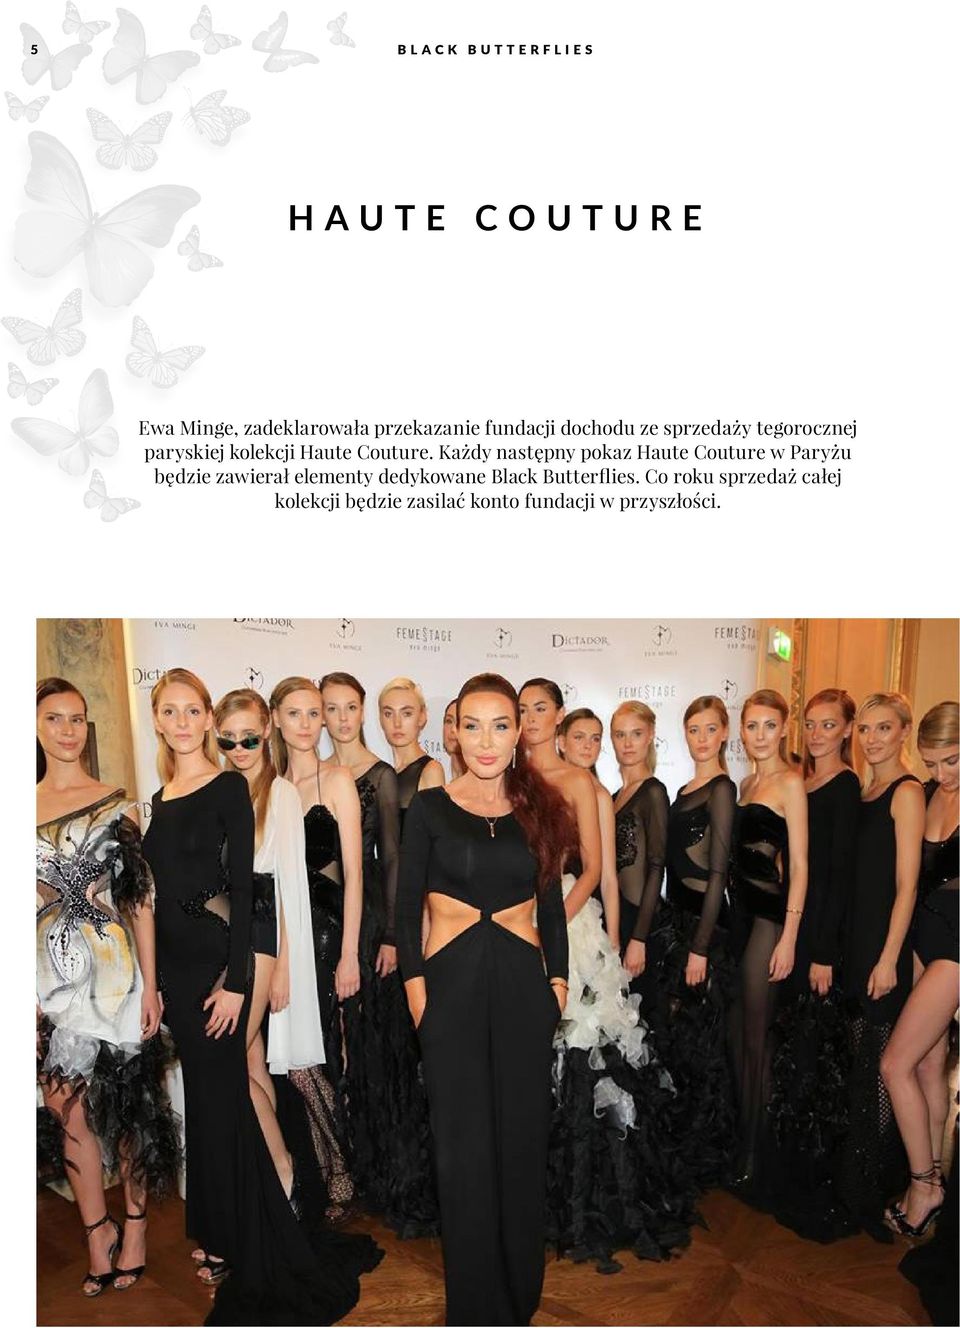 Każdy następny pokaz Haute Couture w Paryżu będzie zawierał elementy